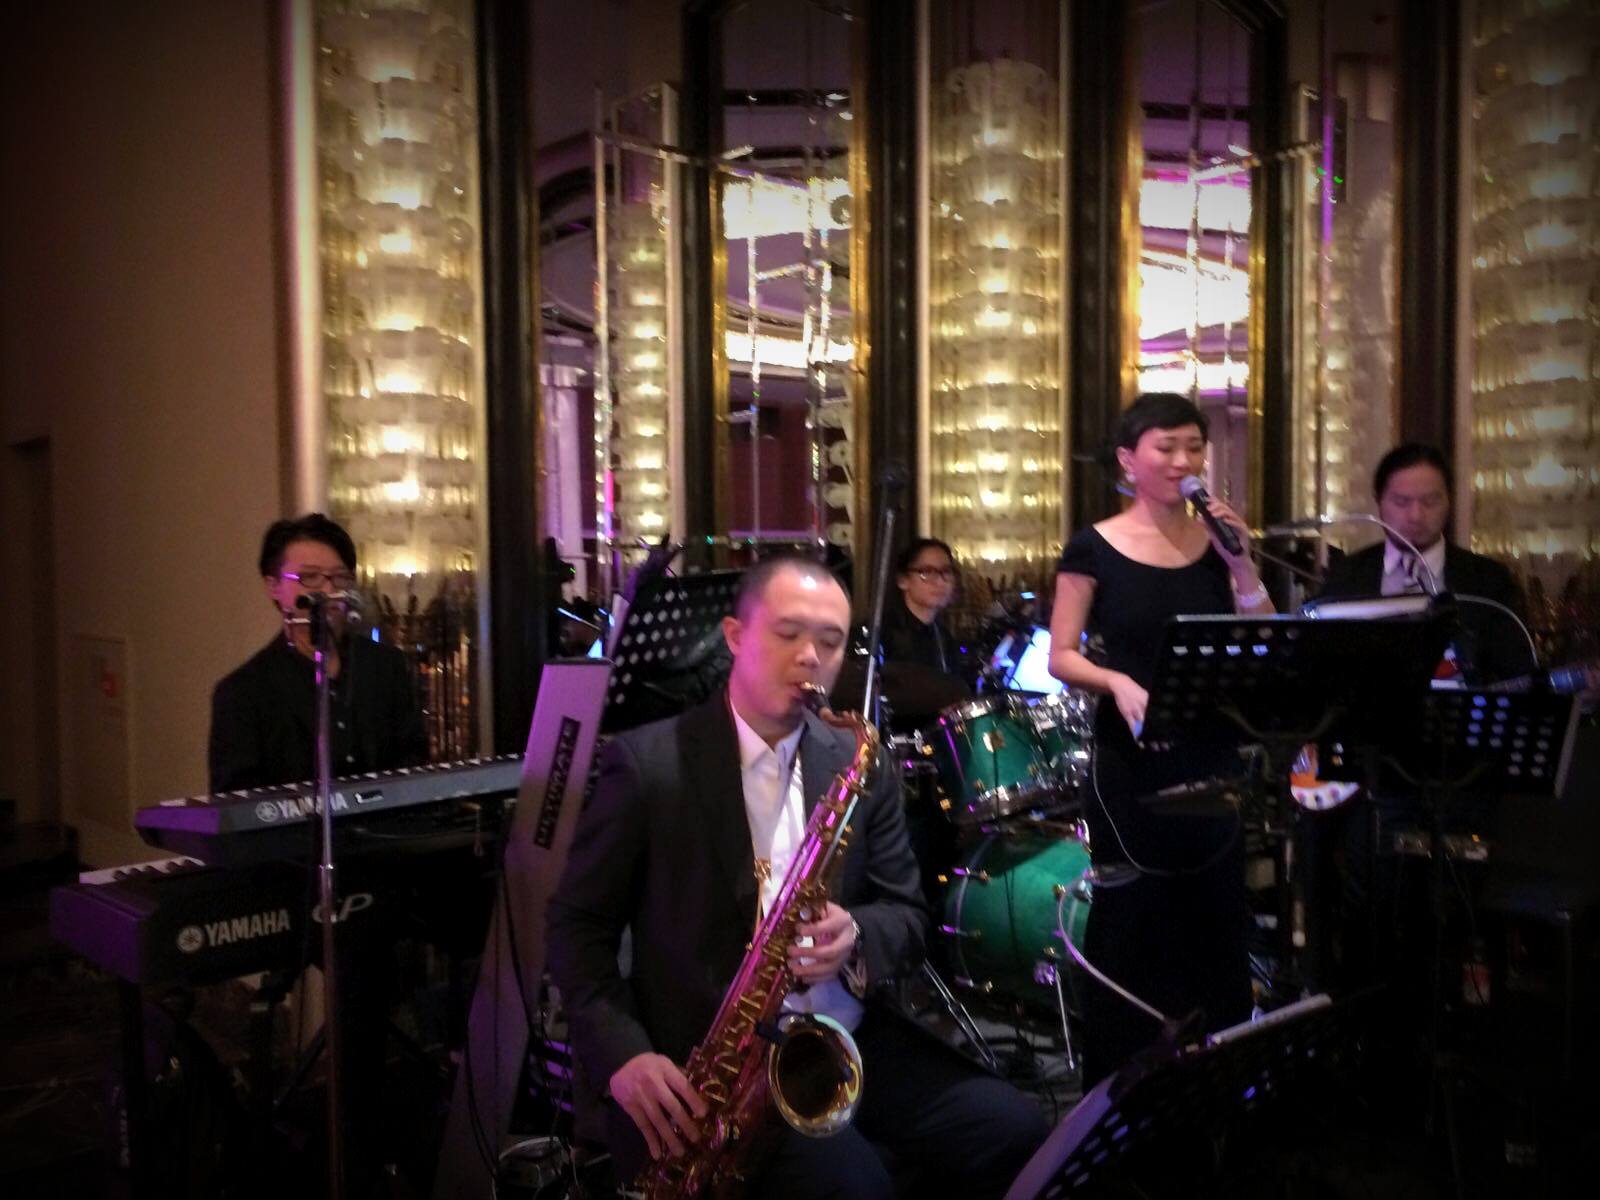 Unison Production Live Music band performance - Listing celebration dinner in Grand Hyatt